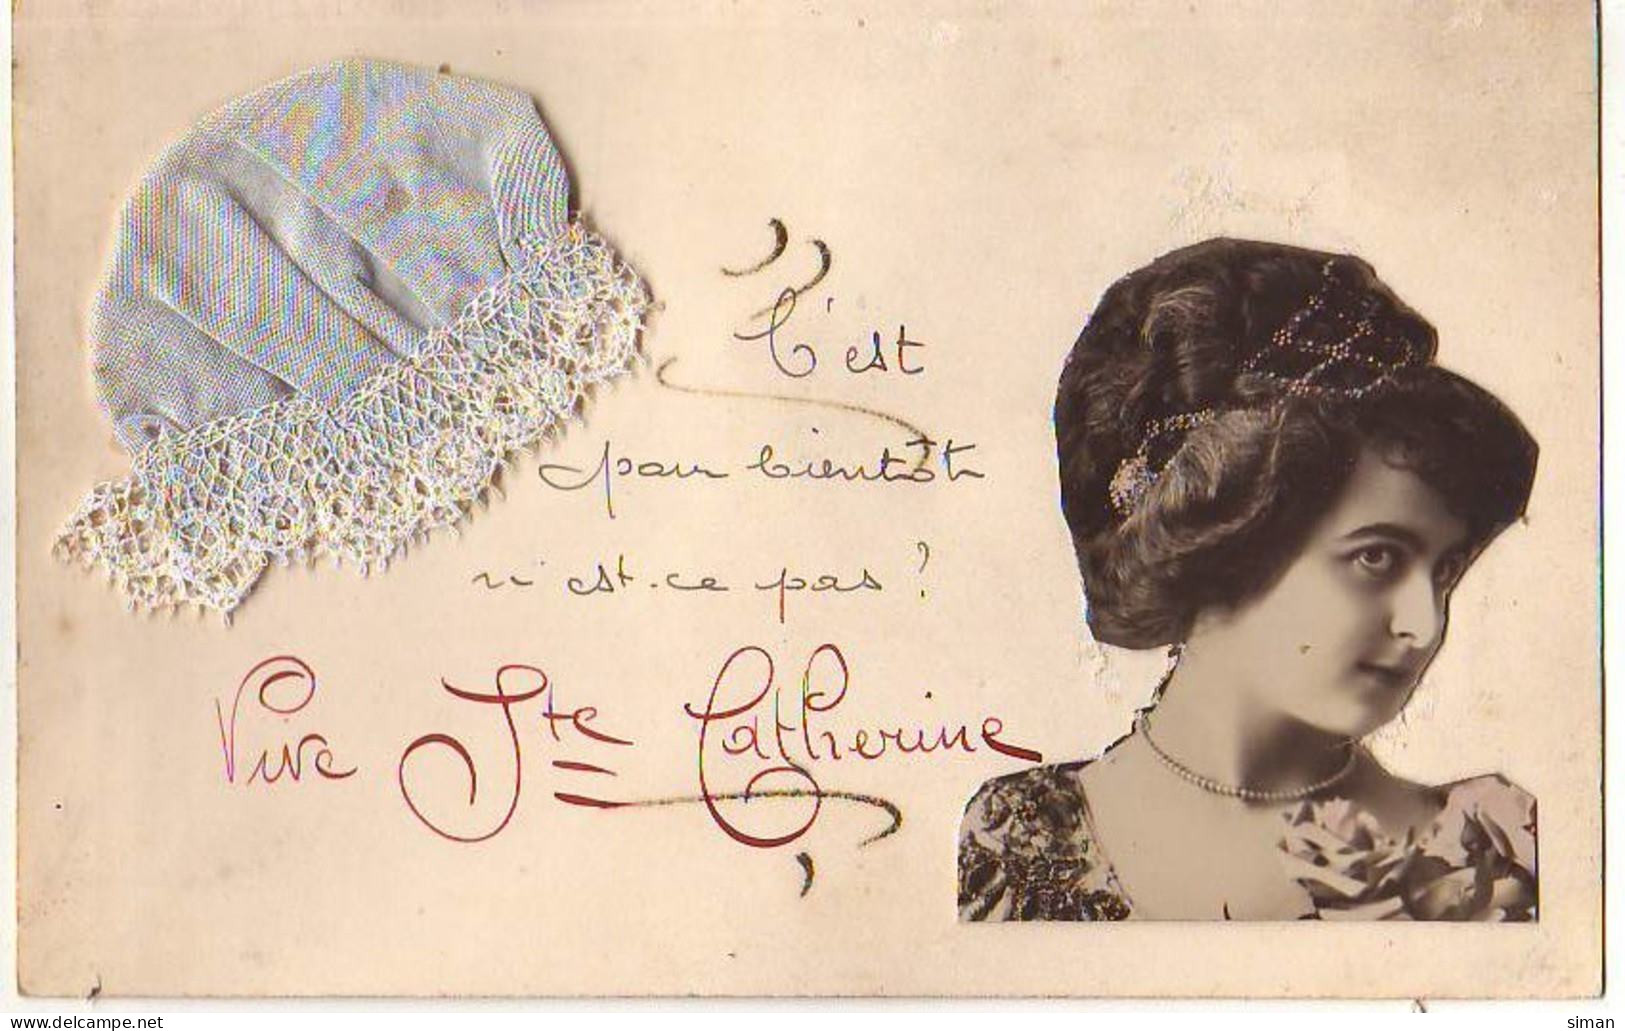 N°14701 - Vive Sainte-Catherine - Photo De Profil D'une Jeune Femme, Et Un Bonnet Bleu Clair - Saint-Catherine's Day